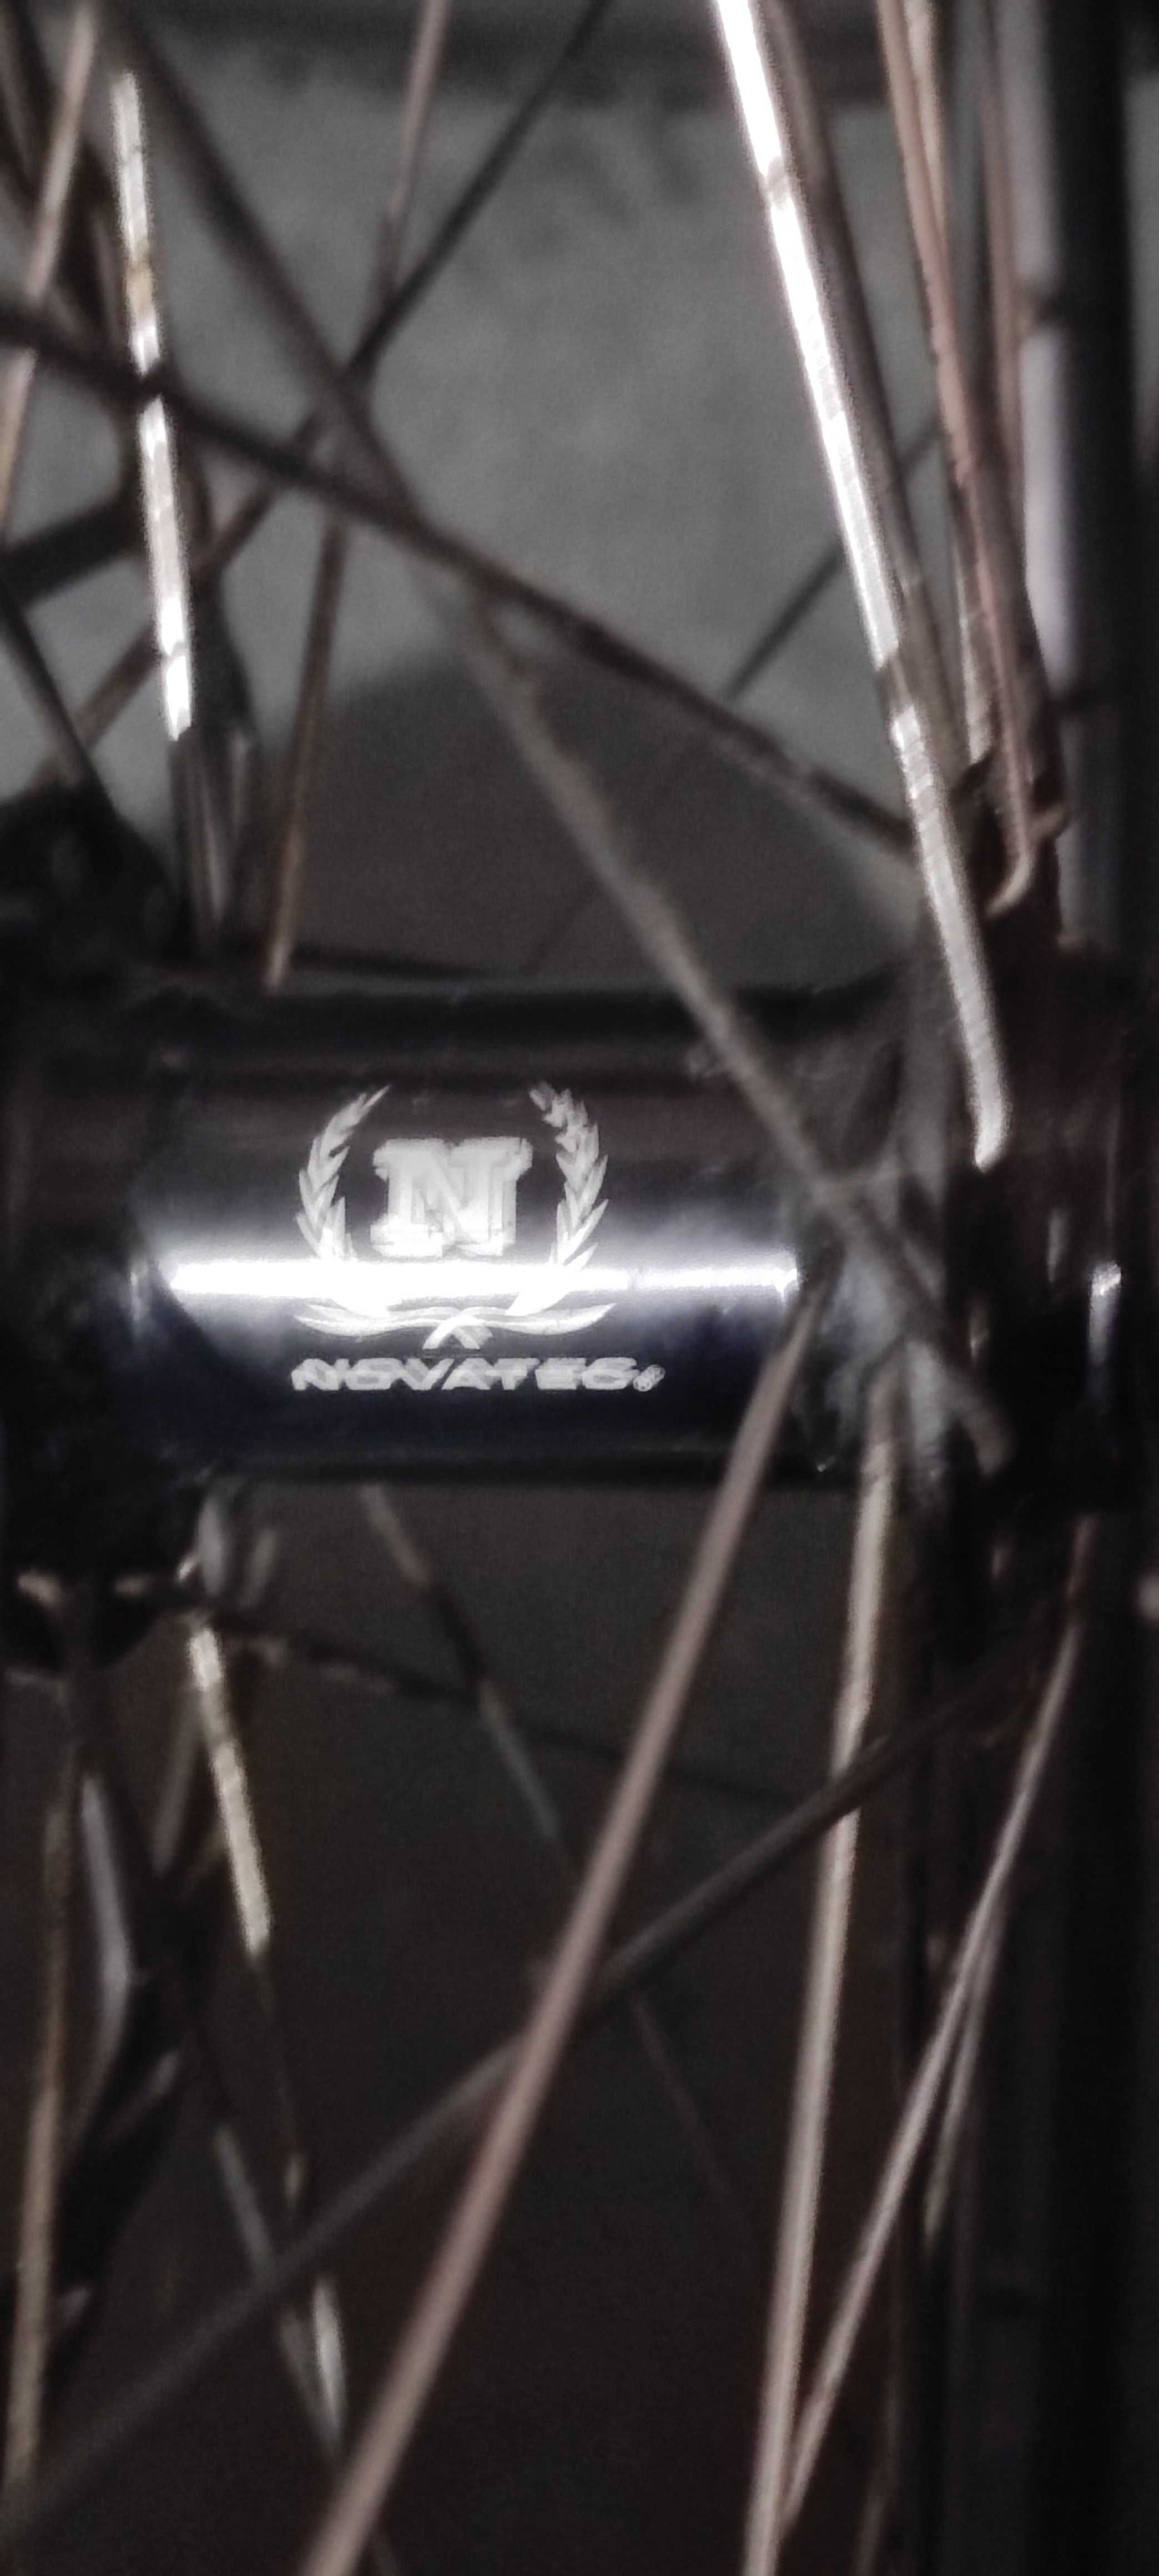 Kola 28 MTB rower